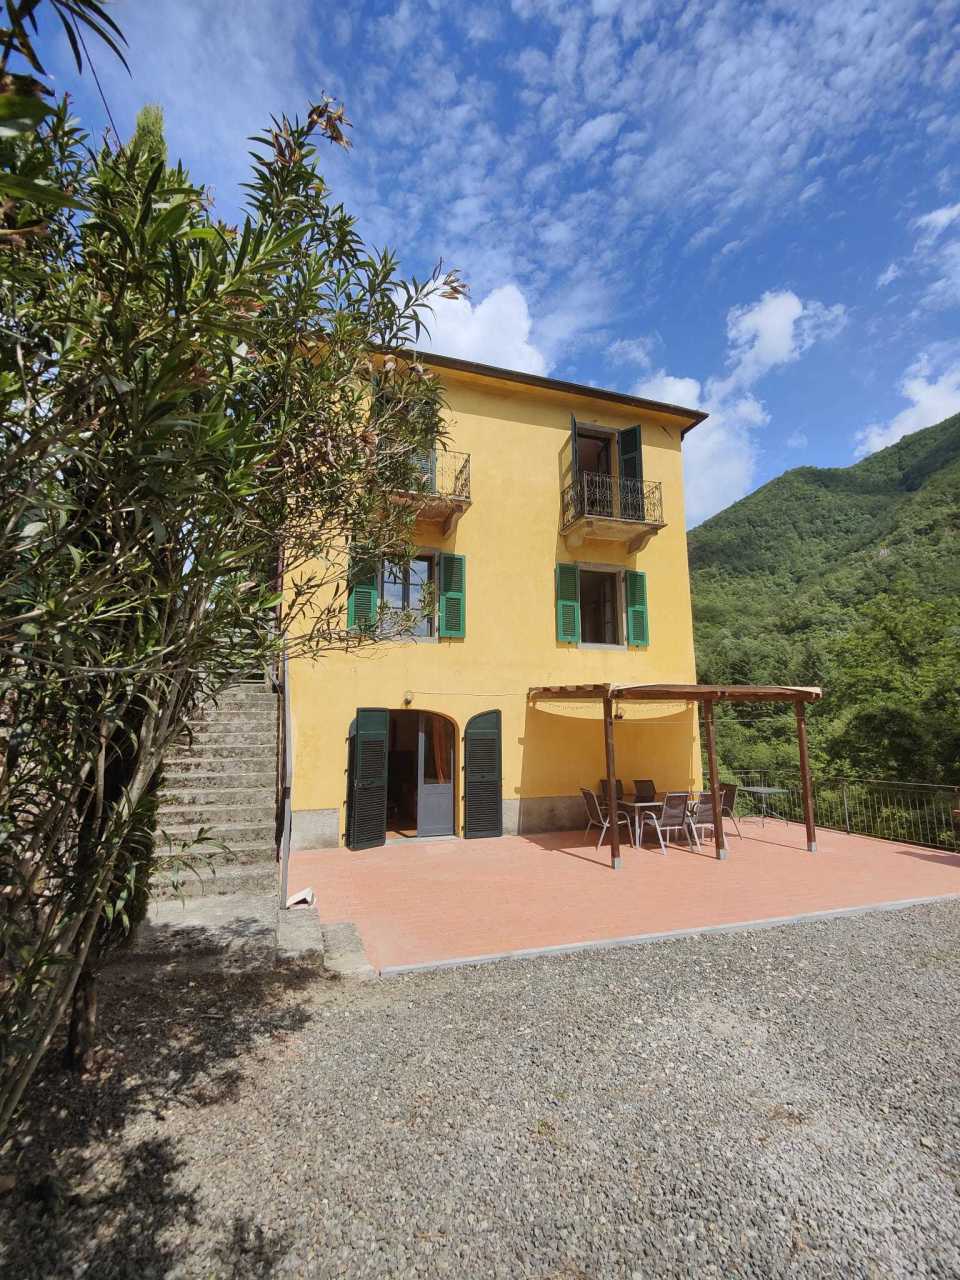 Rustico / Casale in vendita a Licciana Nardi, 10 locali, prezzo € 300.000 | PortaleAgenzieImmobiliari.it